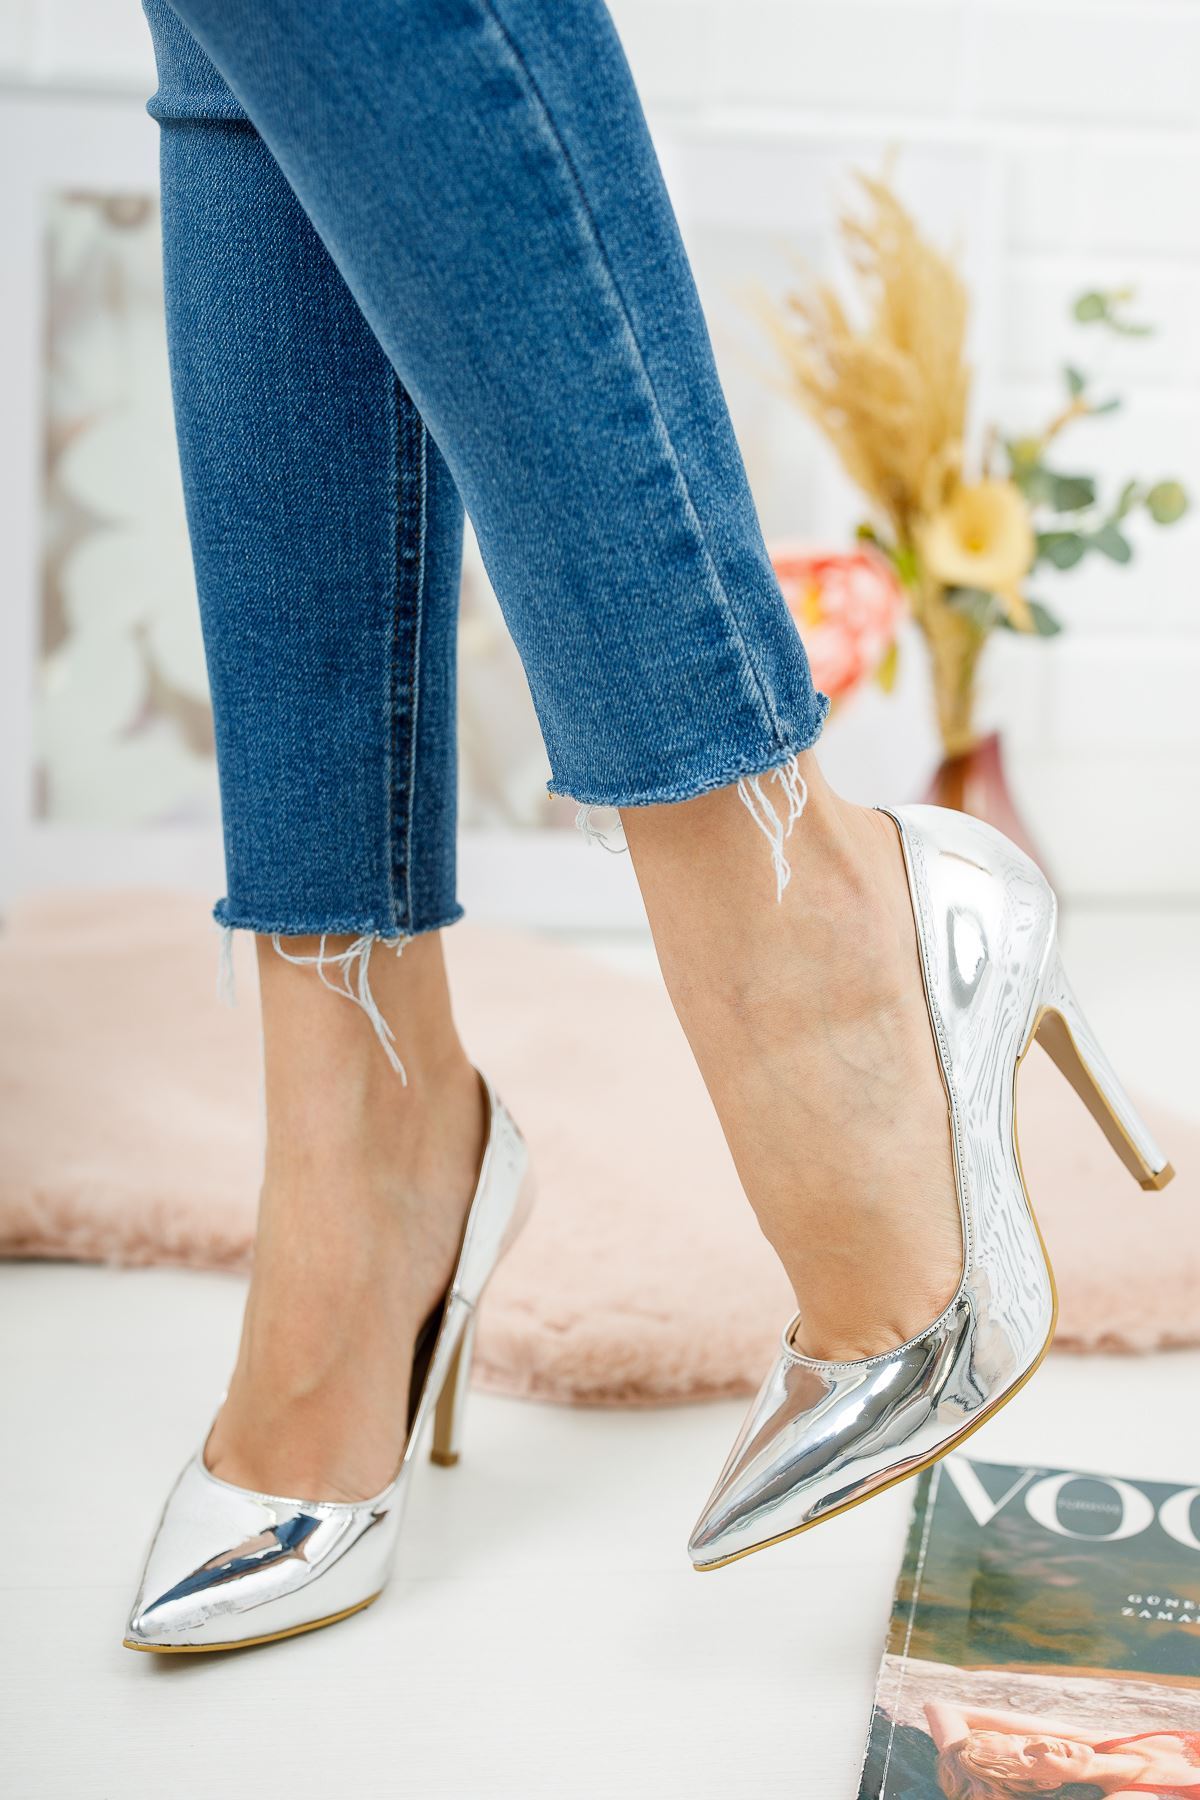 Tokyo Gümüş Ayna Kadın Topuklu Ayakkabı Stiletto